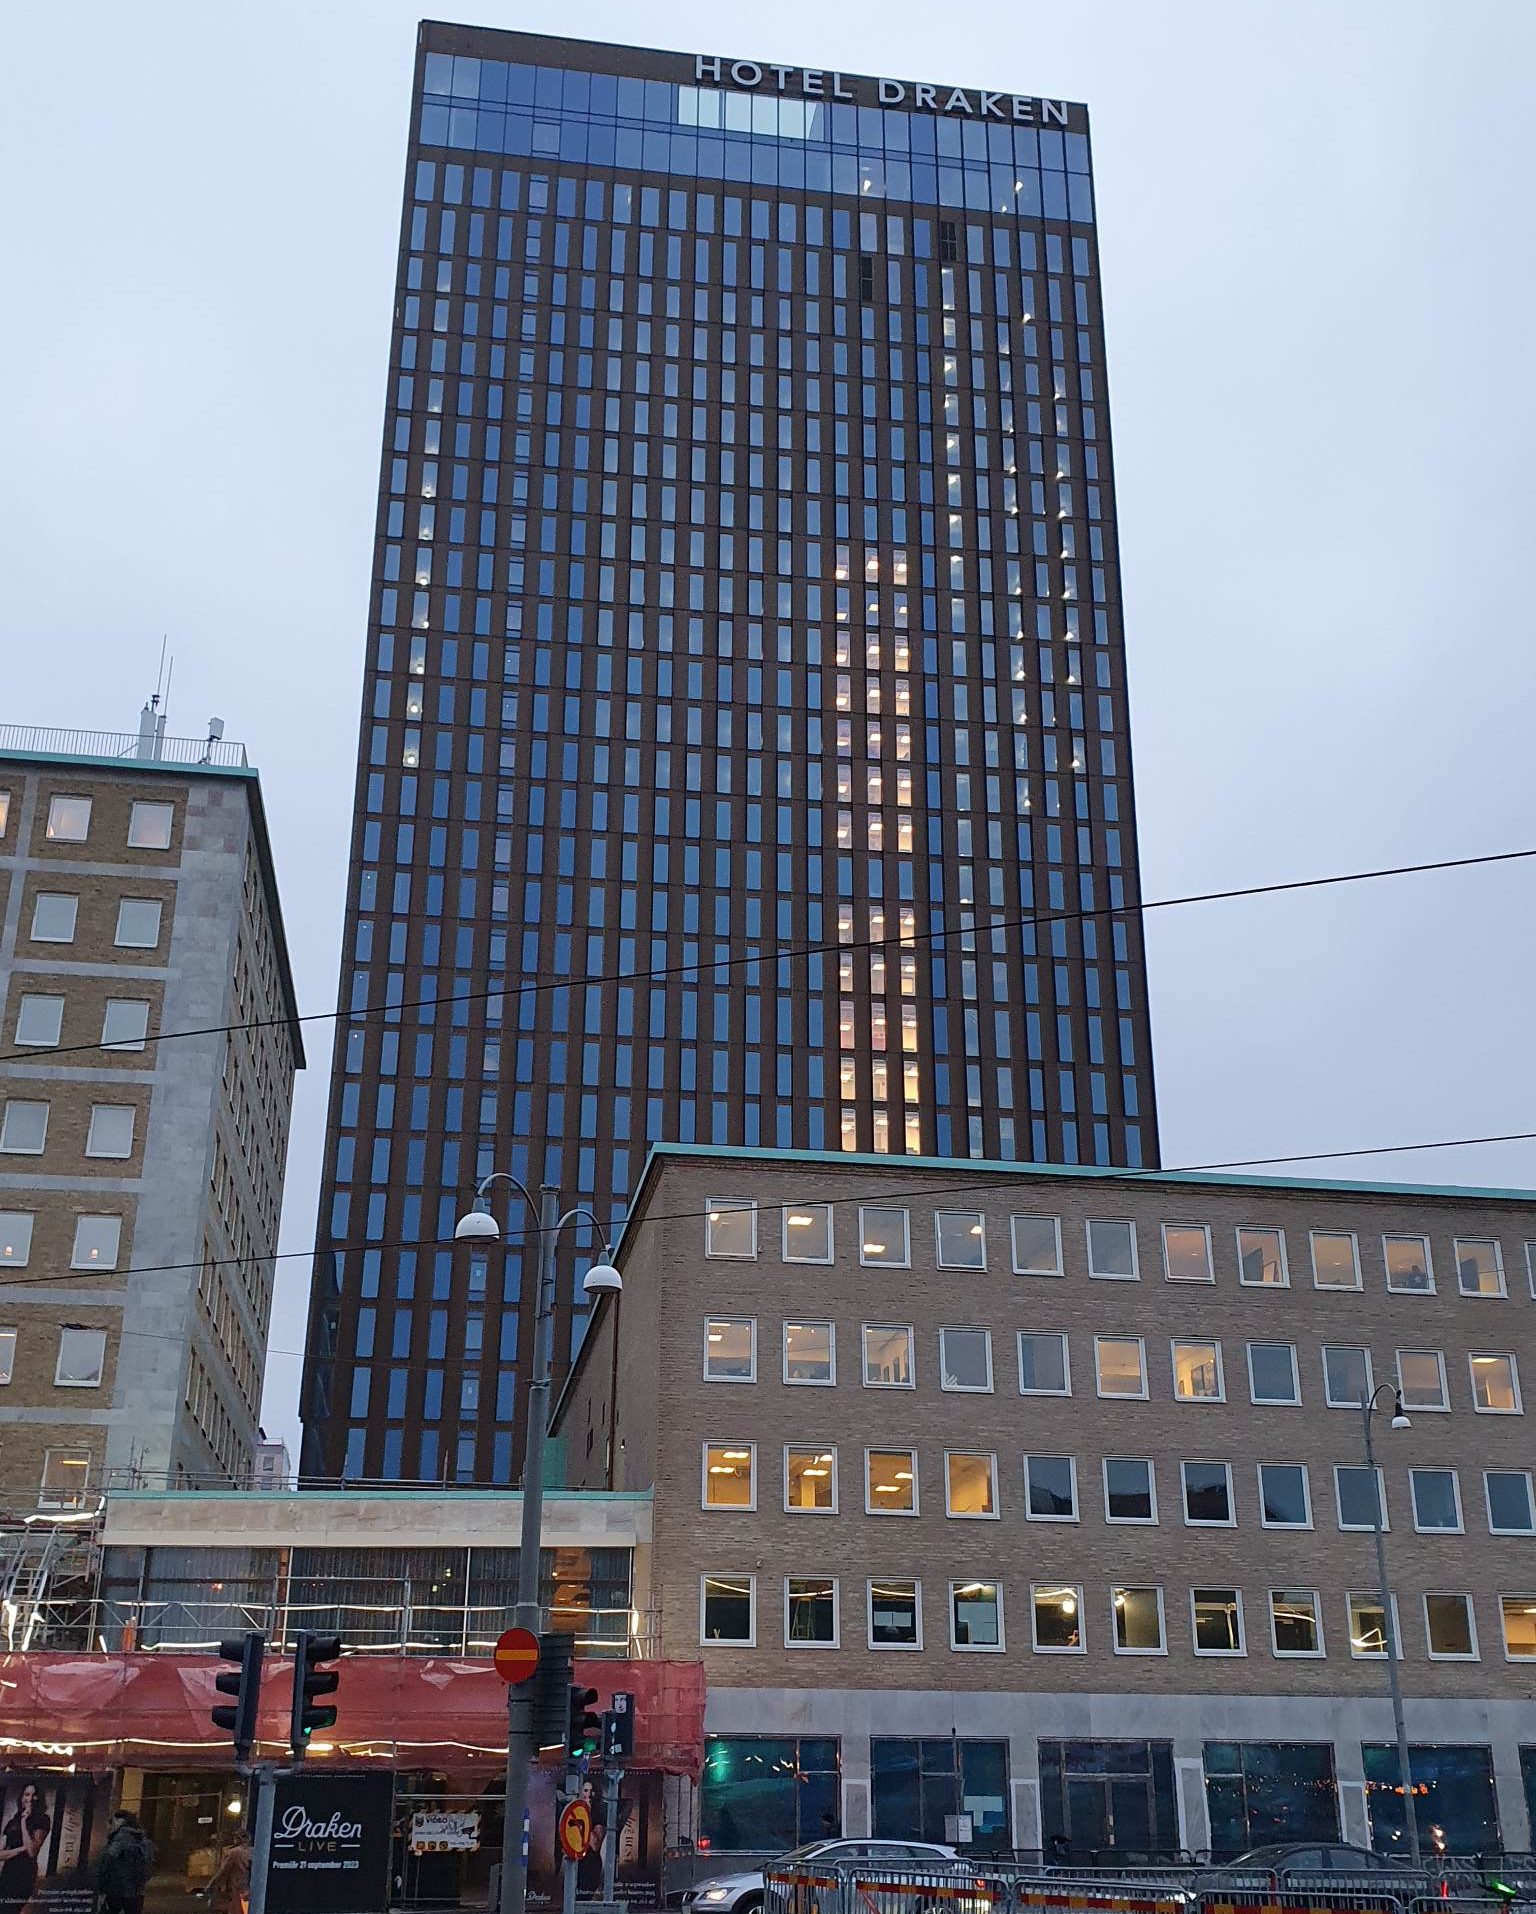 Rösta på hotell Draken om du anser att Göteborgs fulaste hotell förtjänar Kasper Kalkon-priset 2023! ! Foto: Mats Savolainen